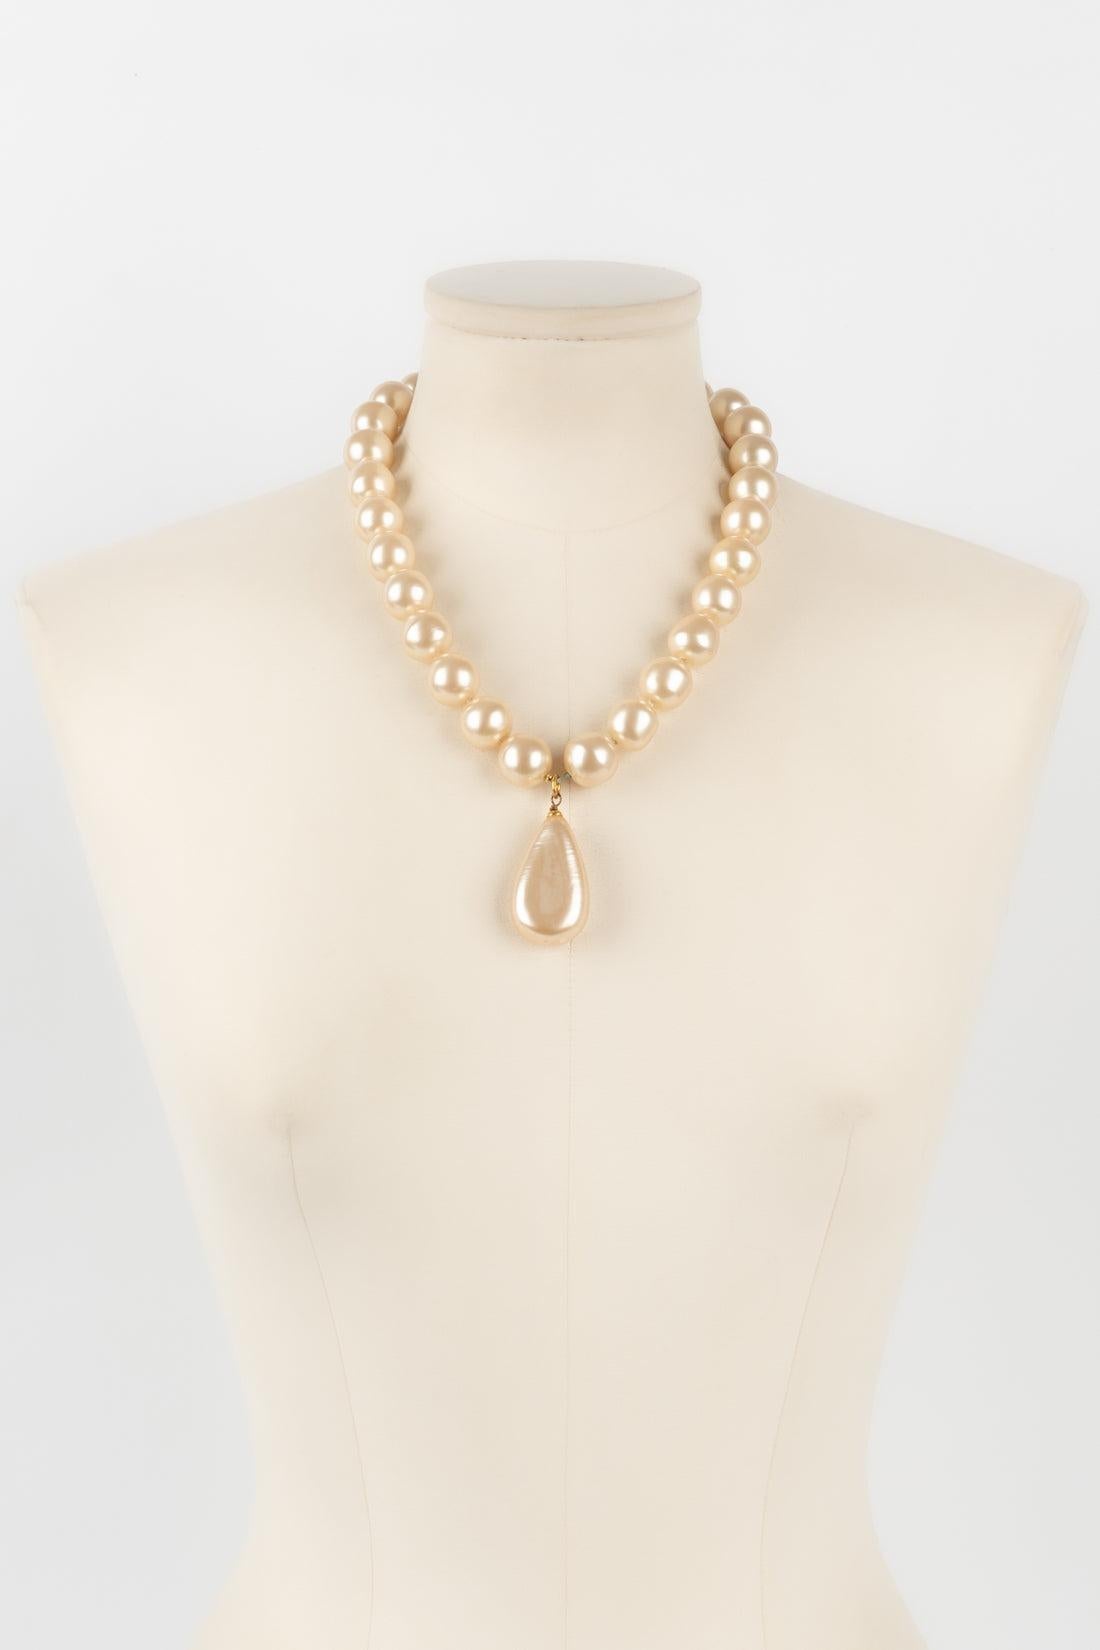 Chanel - (Made in France) Collier avec une attache en métal doré et des perles fantaisie assemblées avec des nœuds.

Informations complémentaires :
Condit : Très bon état.
Dimensions : Longueur : 50 cm

Référence du vendeur : CB203
